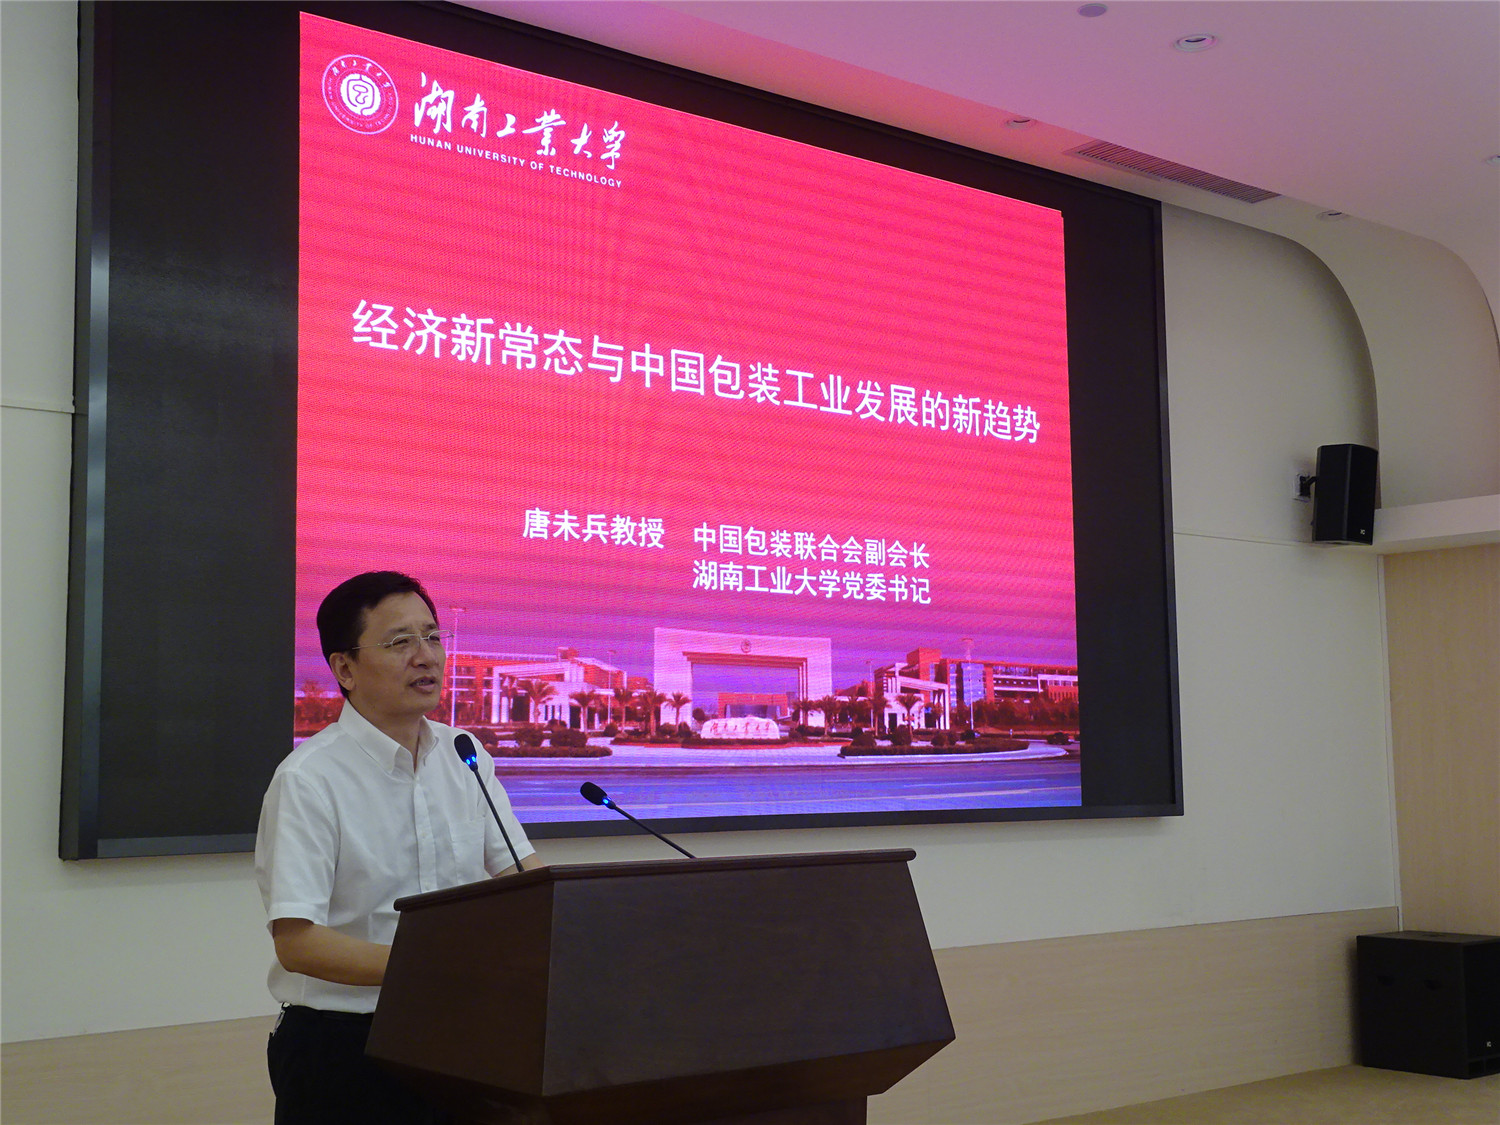 中国包装联合会副会长、湖南工业大学党委书记、唐未兵教授发表演讲